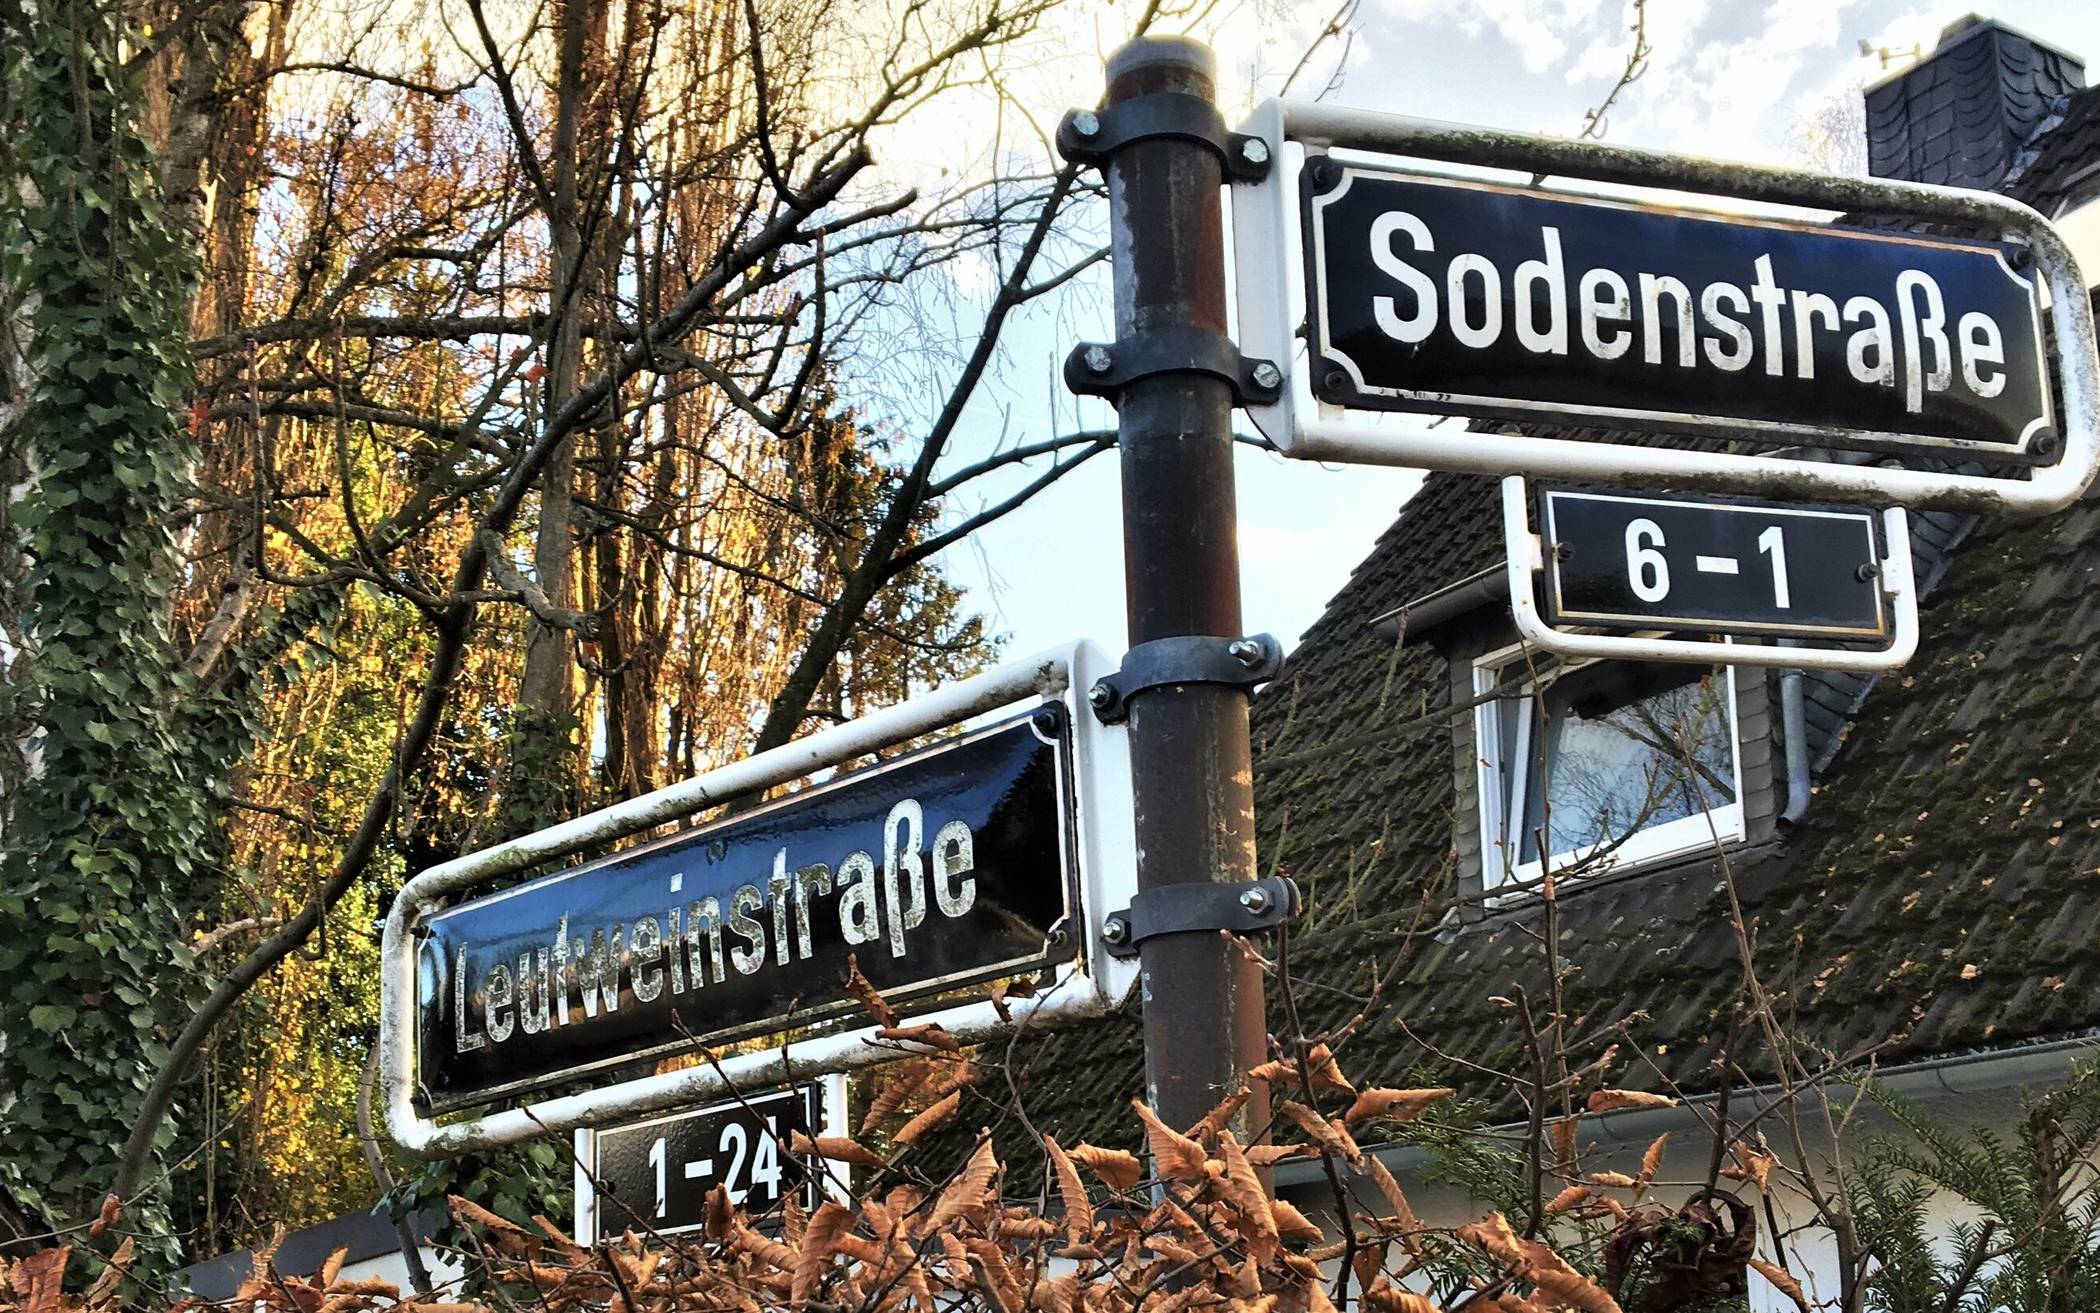  Umstrittene Namensgebung - die Leutweinstraße in Urdenbach. Archiv 